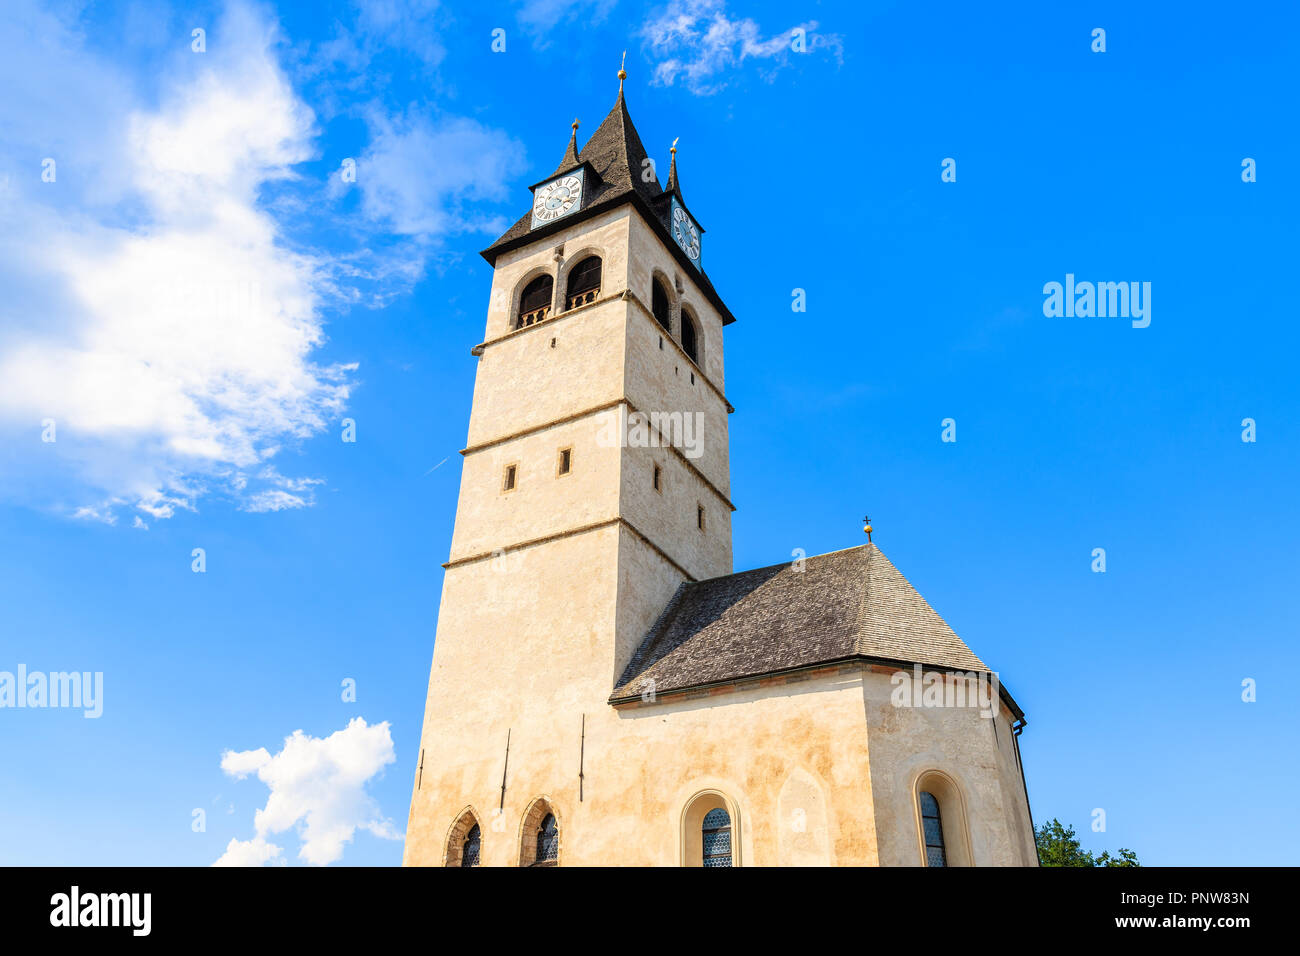 Campanile di una chiesa in Kitzbuhel cittadina soleggiata contro il cielo blu, Tirolo, Austria Foto Stock